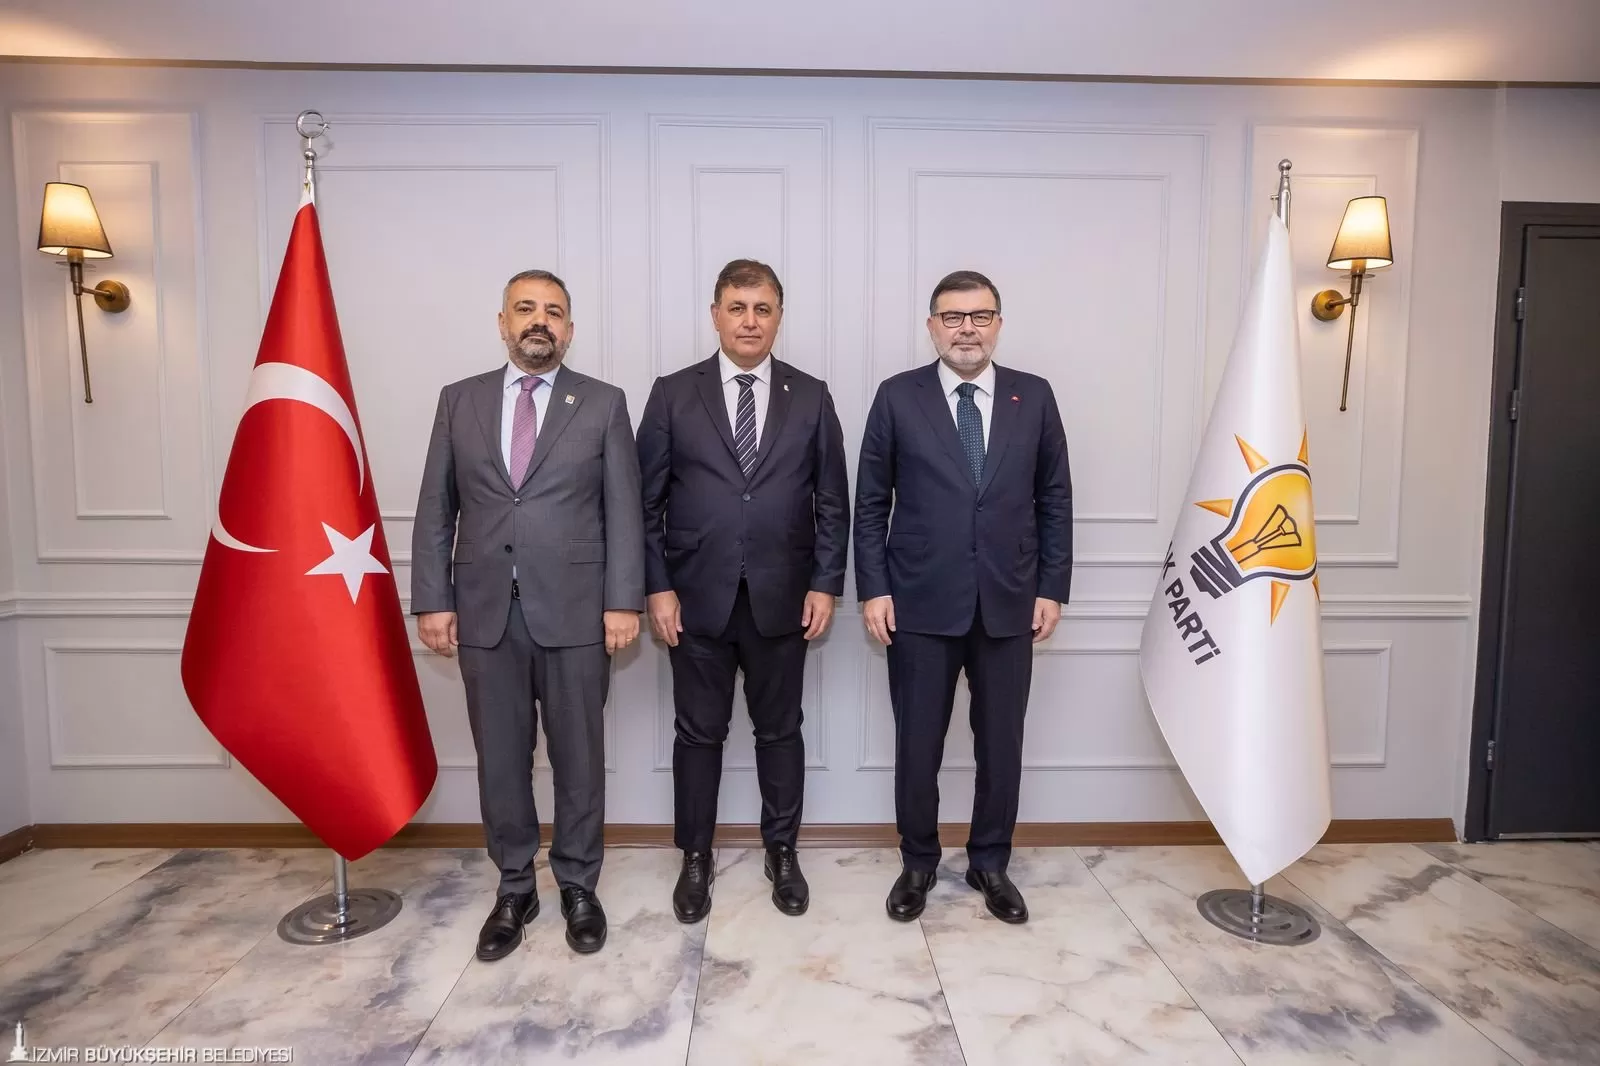 İzmir Büyükşehir Belediye Başkanı Dr. Cemil Tugay, seçim sürecinde gösterilen etik tavır için AK Parti İzmir İl Başkanlığı'nı ziyaret ederek teşekkür etti. 